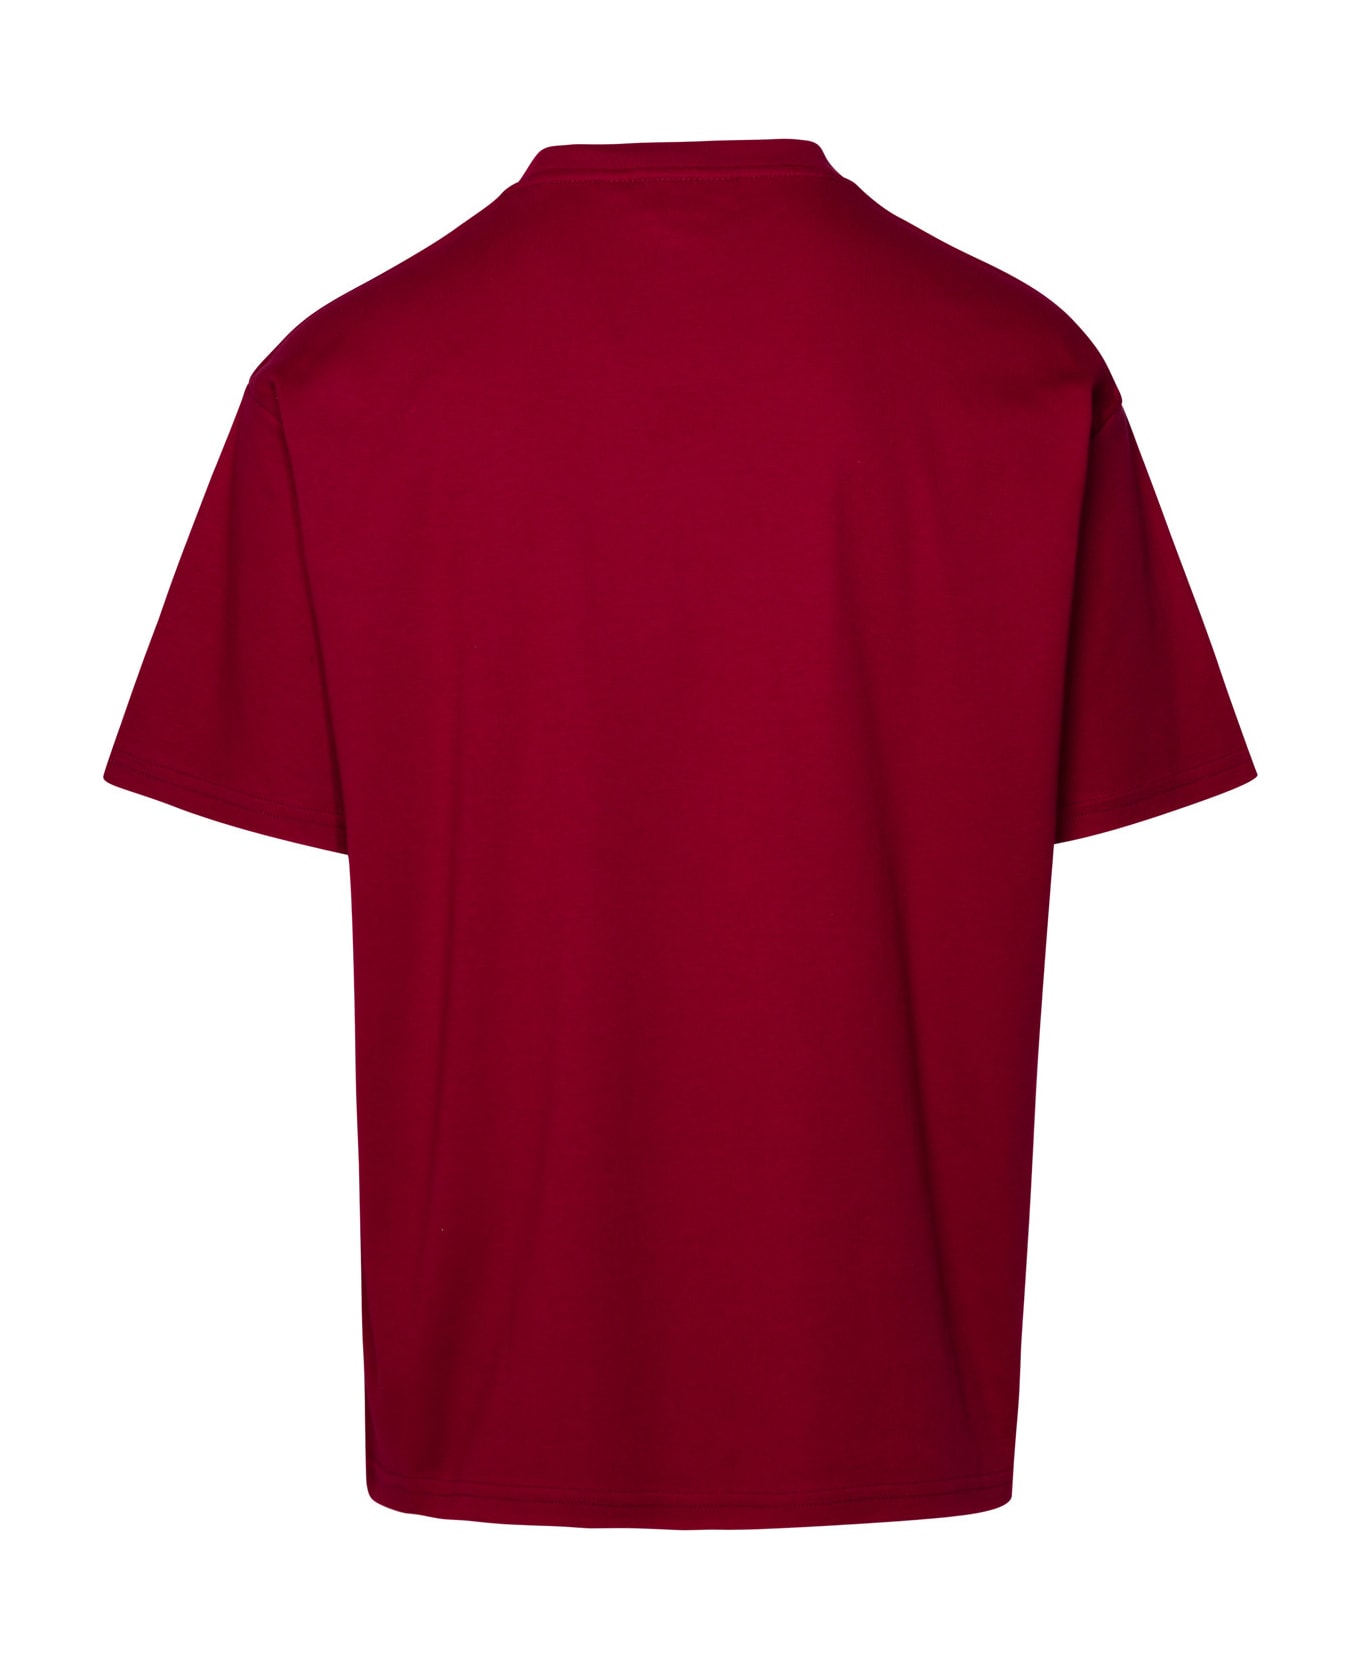 GCDS Burgundy Cotton T-shirt - Bordeaux